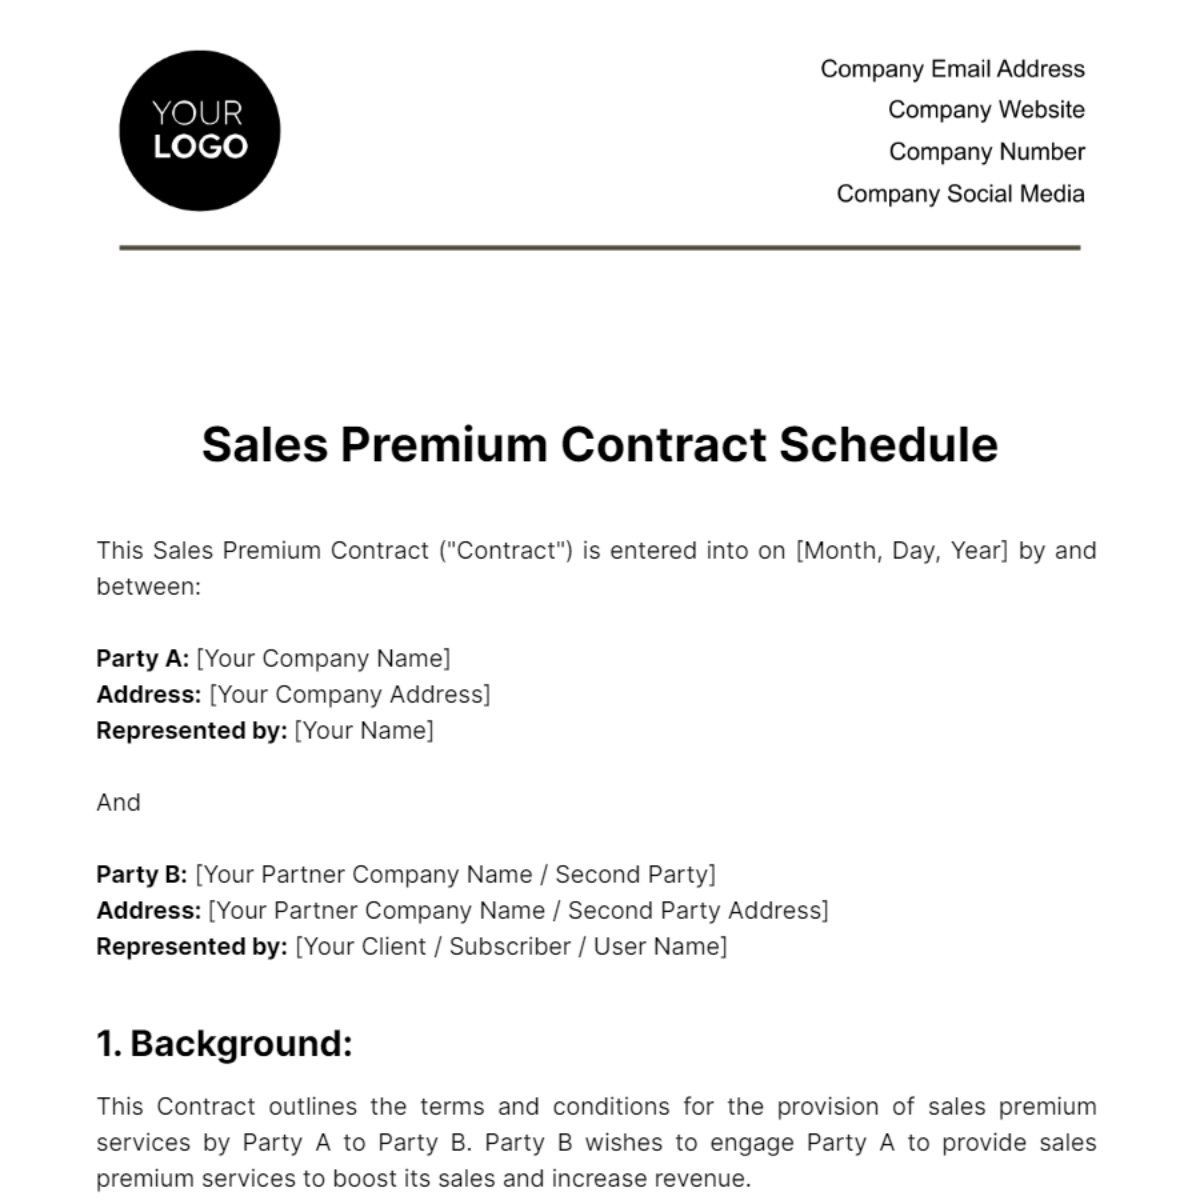 Sales Premium Contract Schedule Template